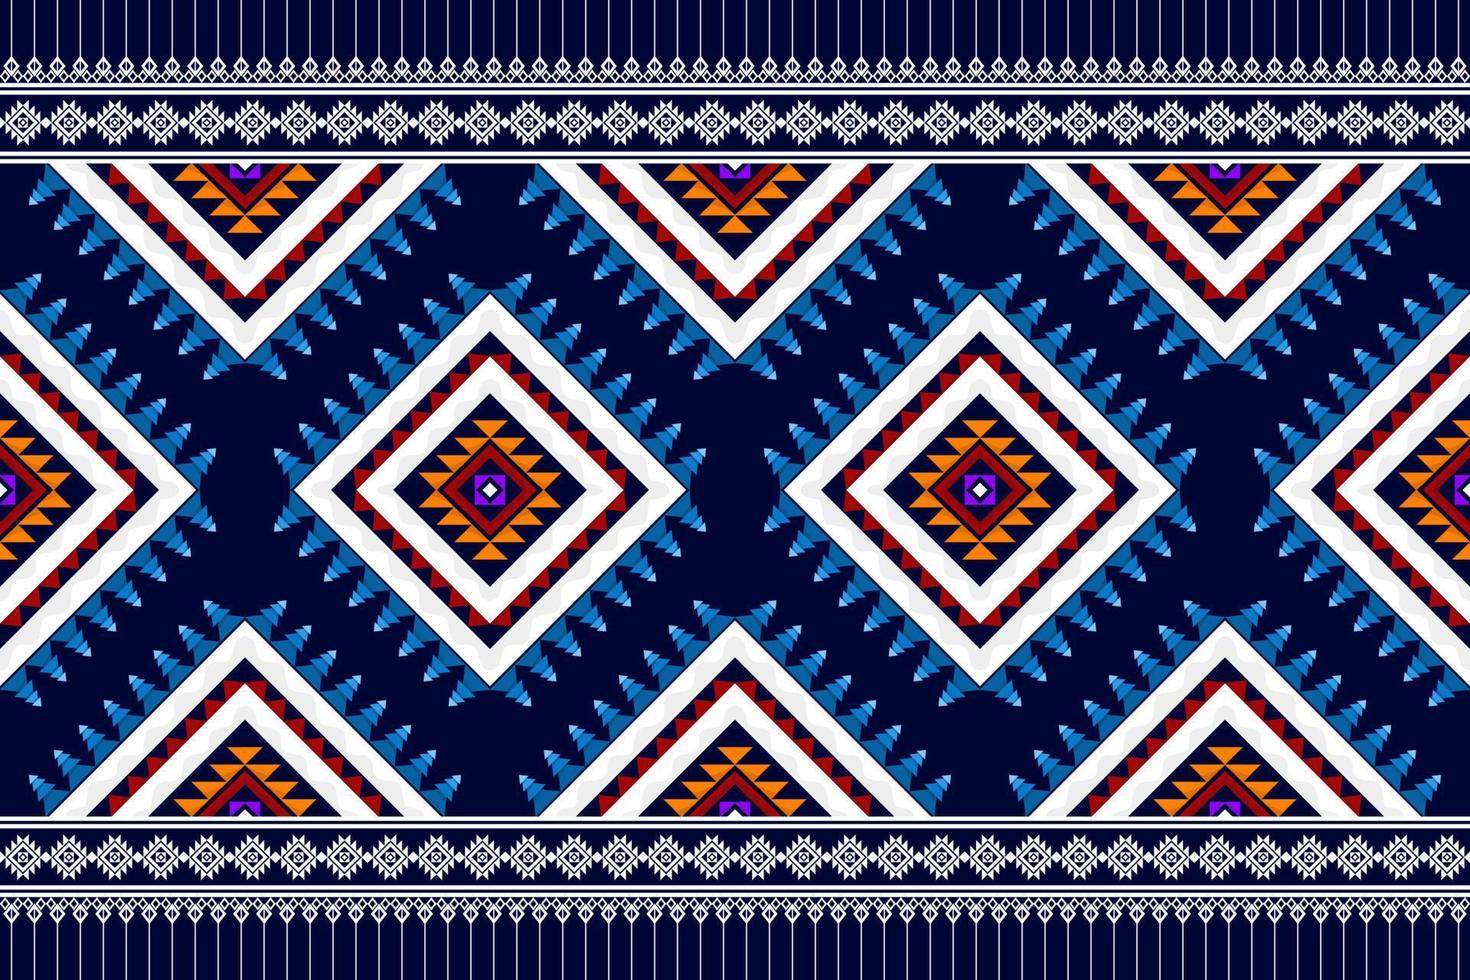 abstract geometrisch naadloos patroonontwerp. Azteekse stof tapijt mandala ornament chevron textiel decoratie behang traditioneel borduurwerk vector illustraties achtergrond